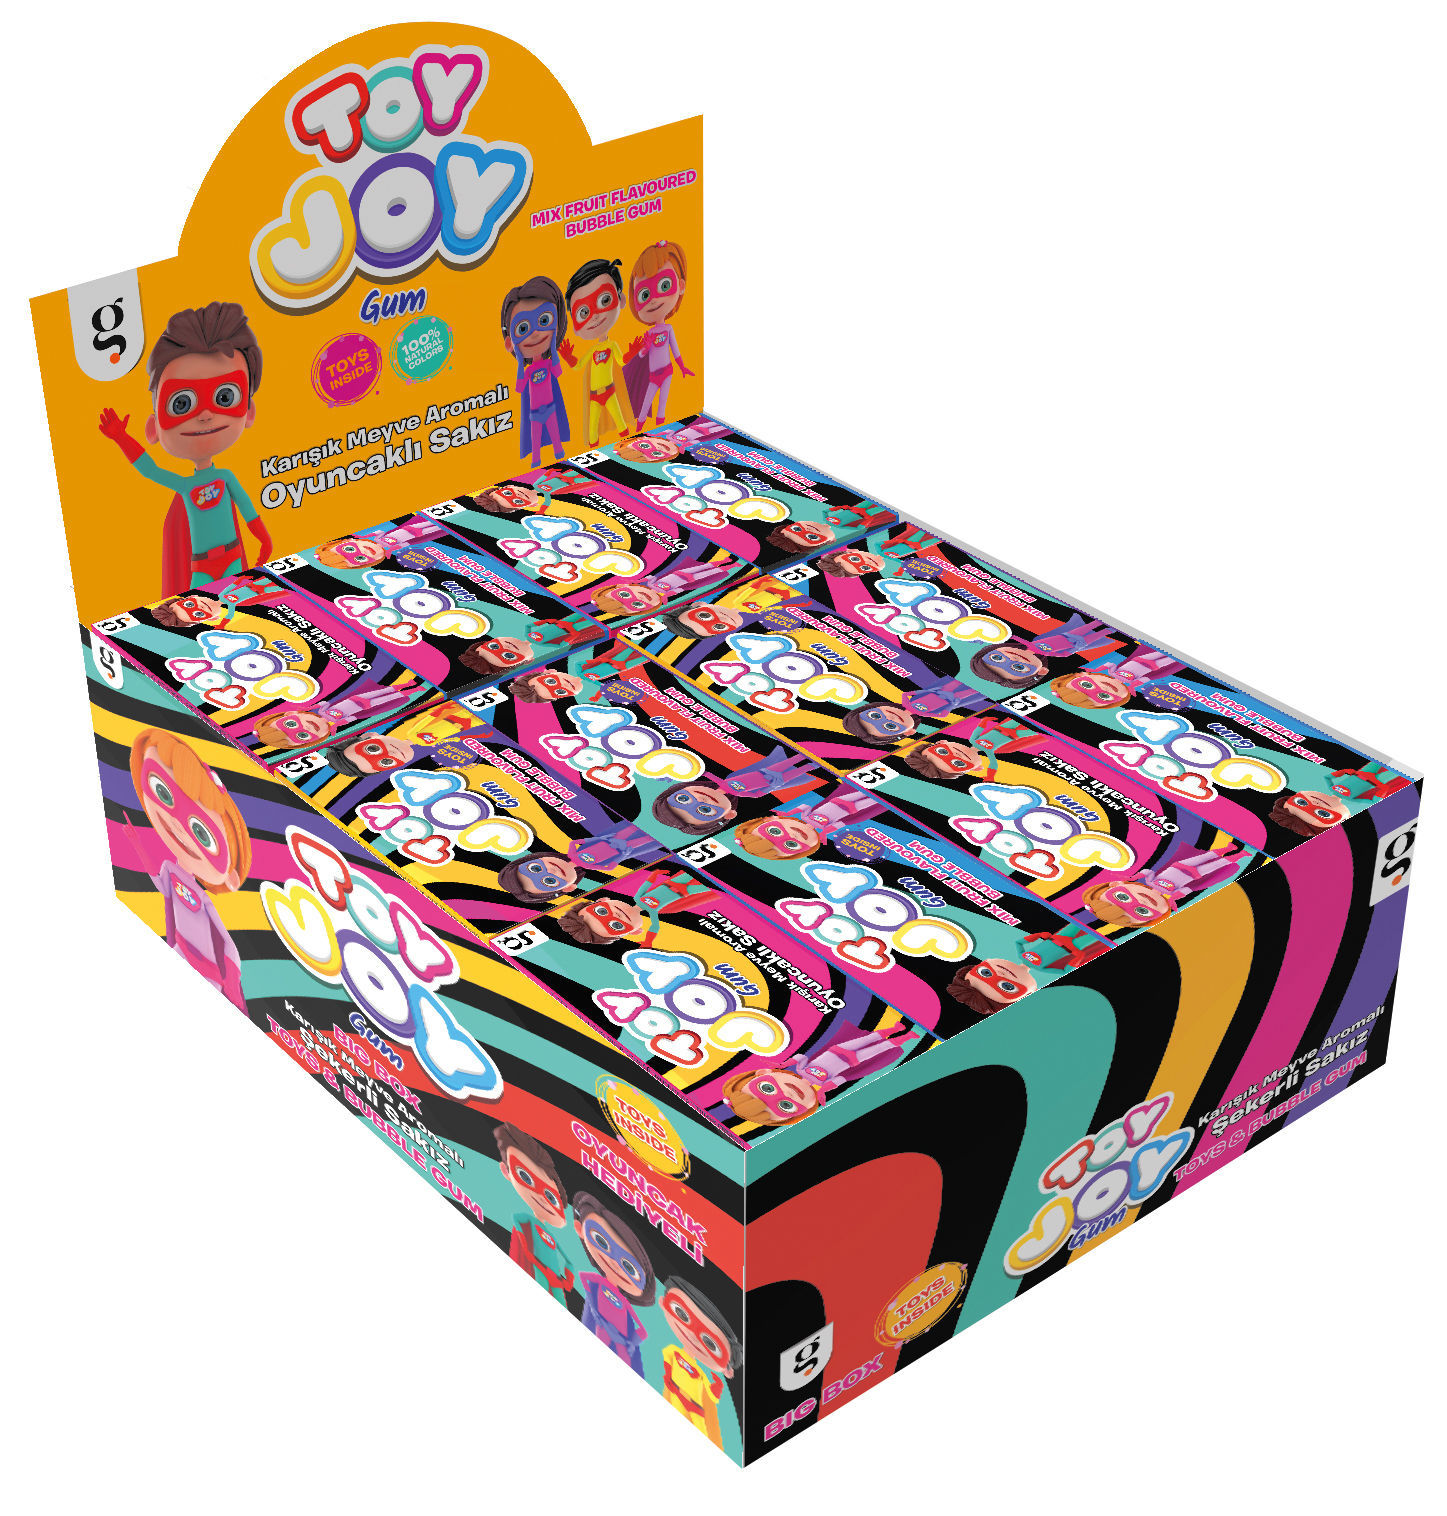 Toy Joy Oyuncaklı Sakız 60 x 4.5 G